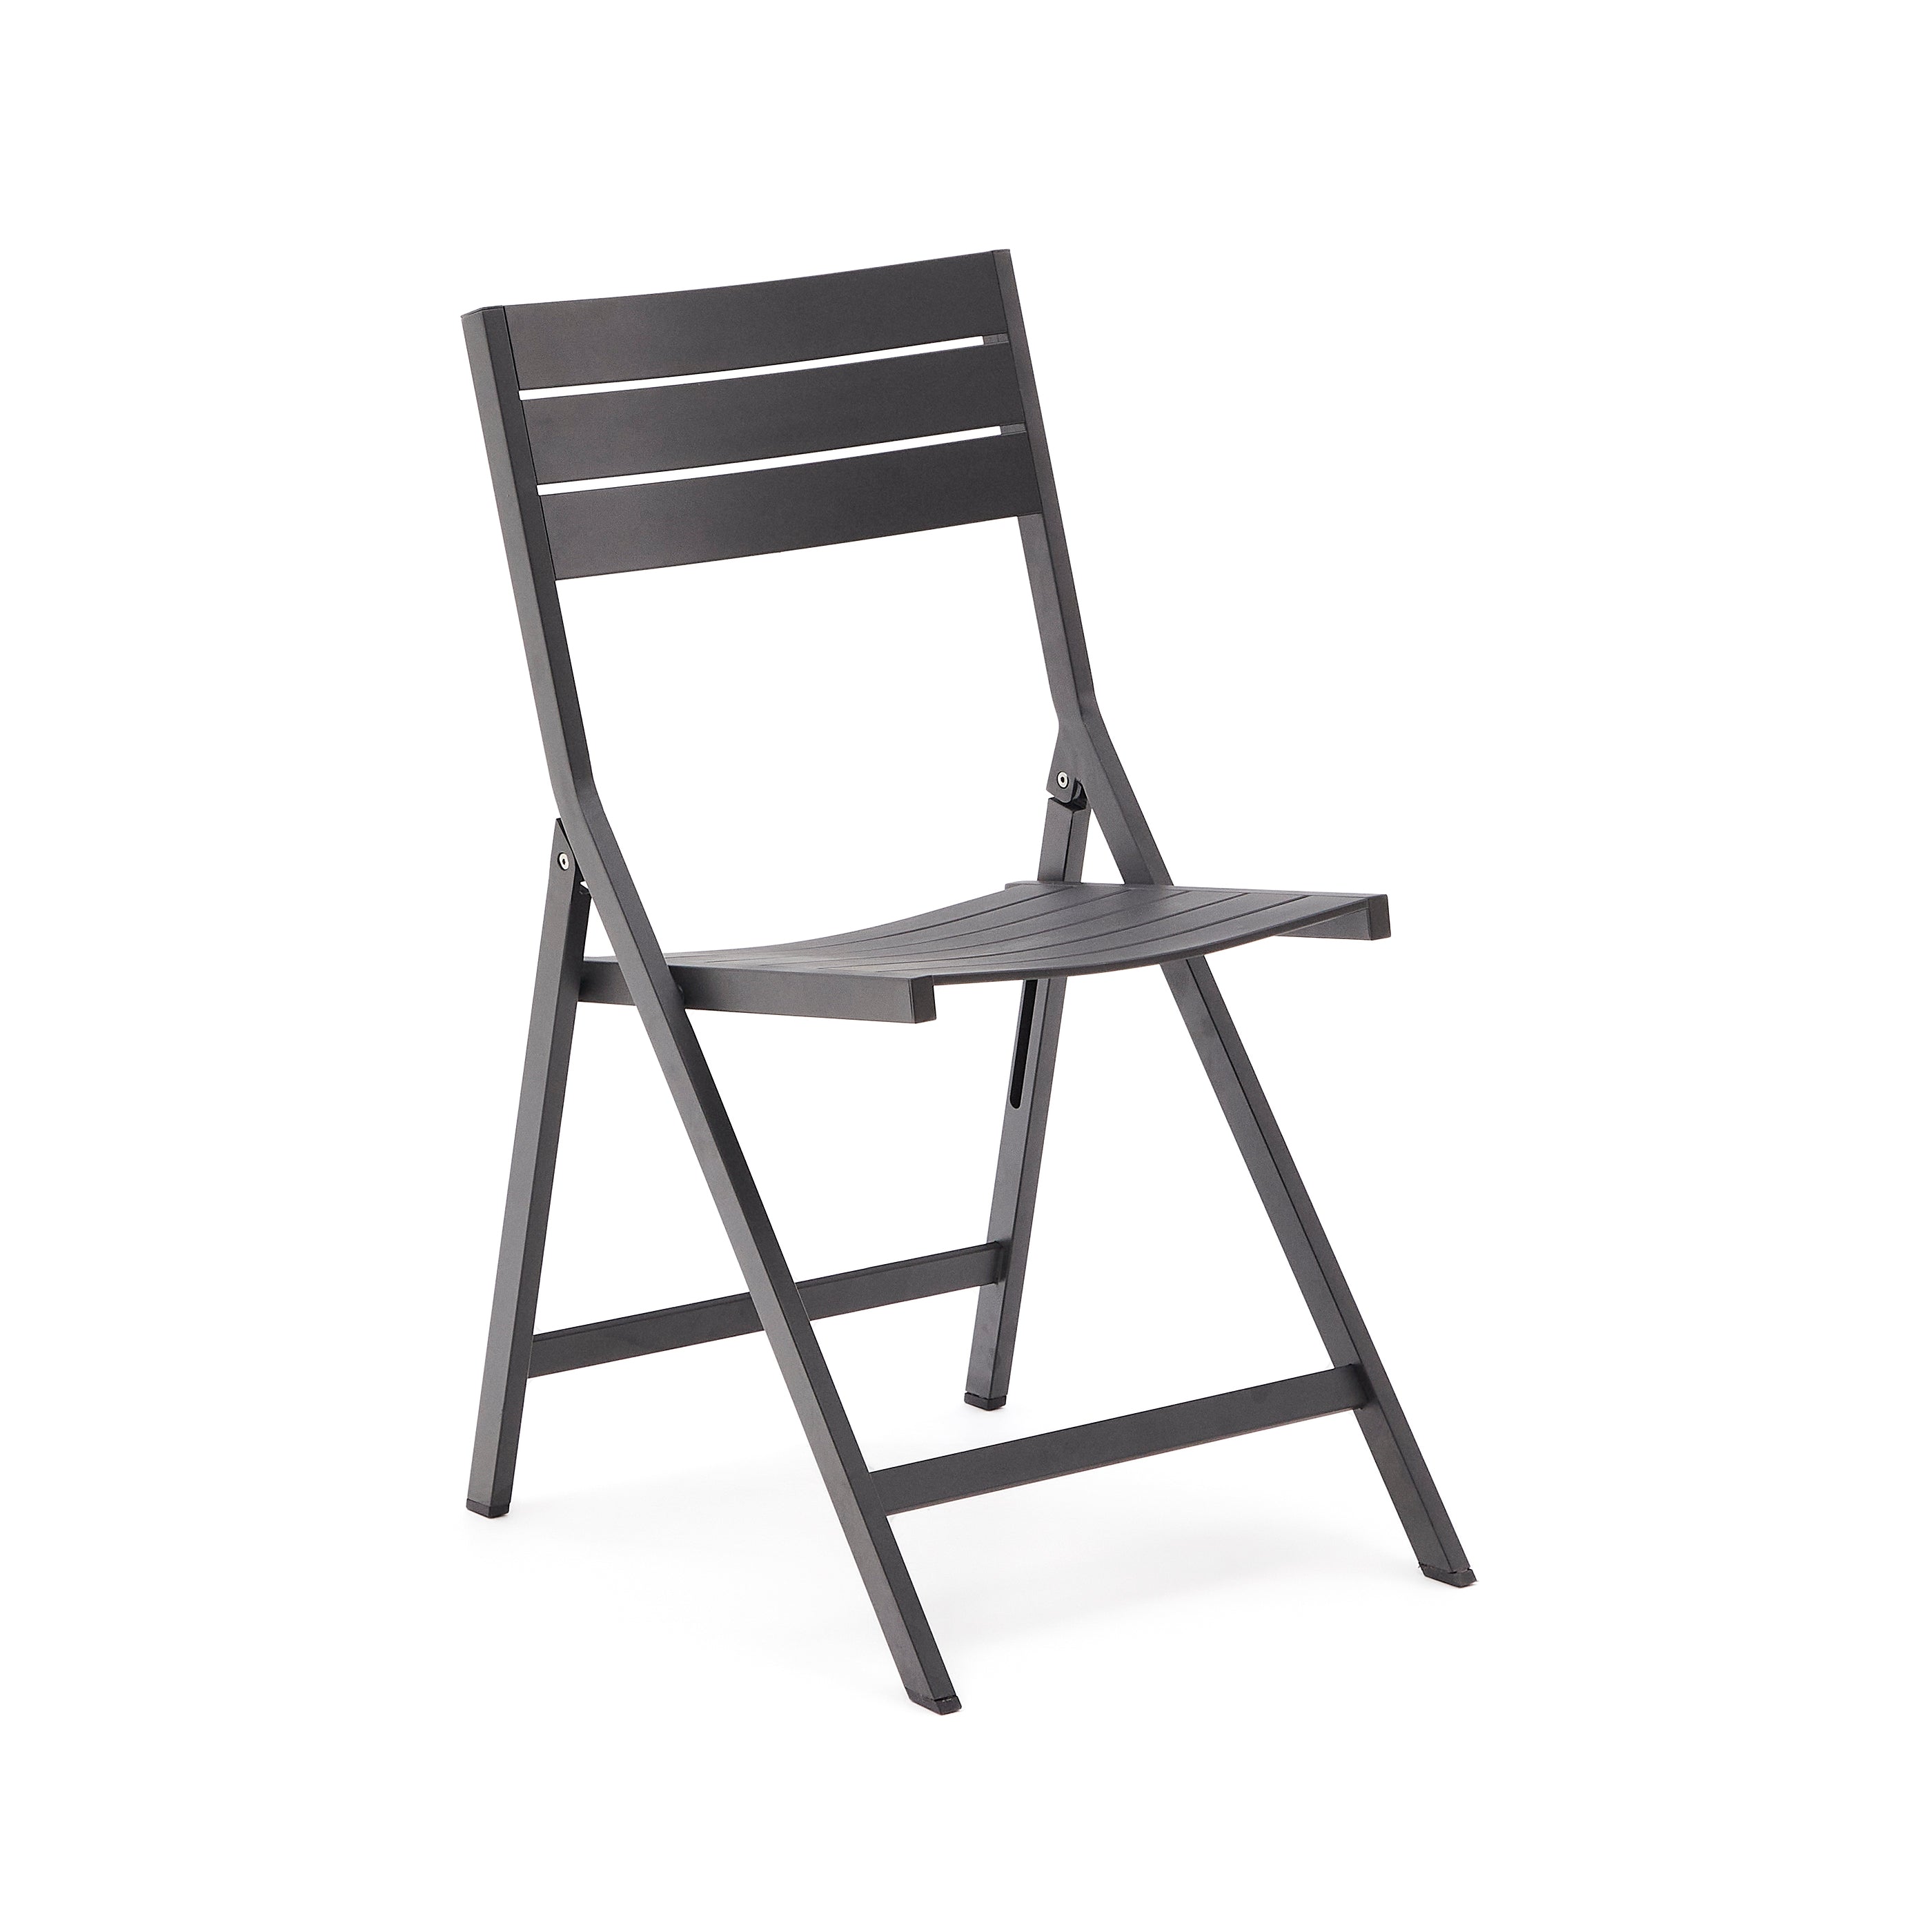 Torreta összecsukható kültéri szék alumíniumból, fekete bevonattal